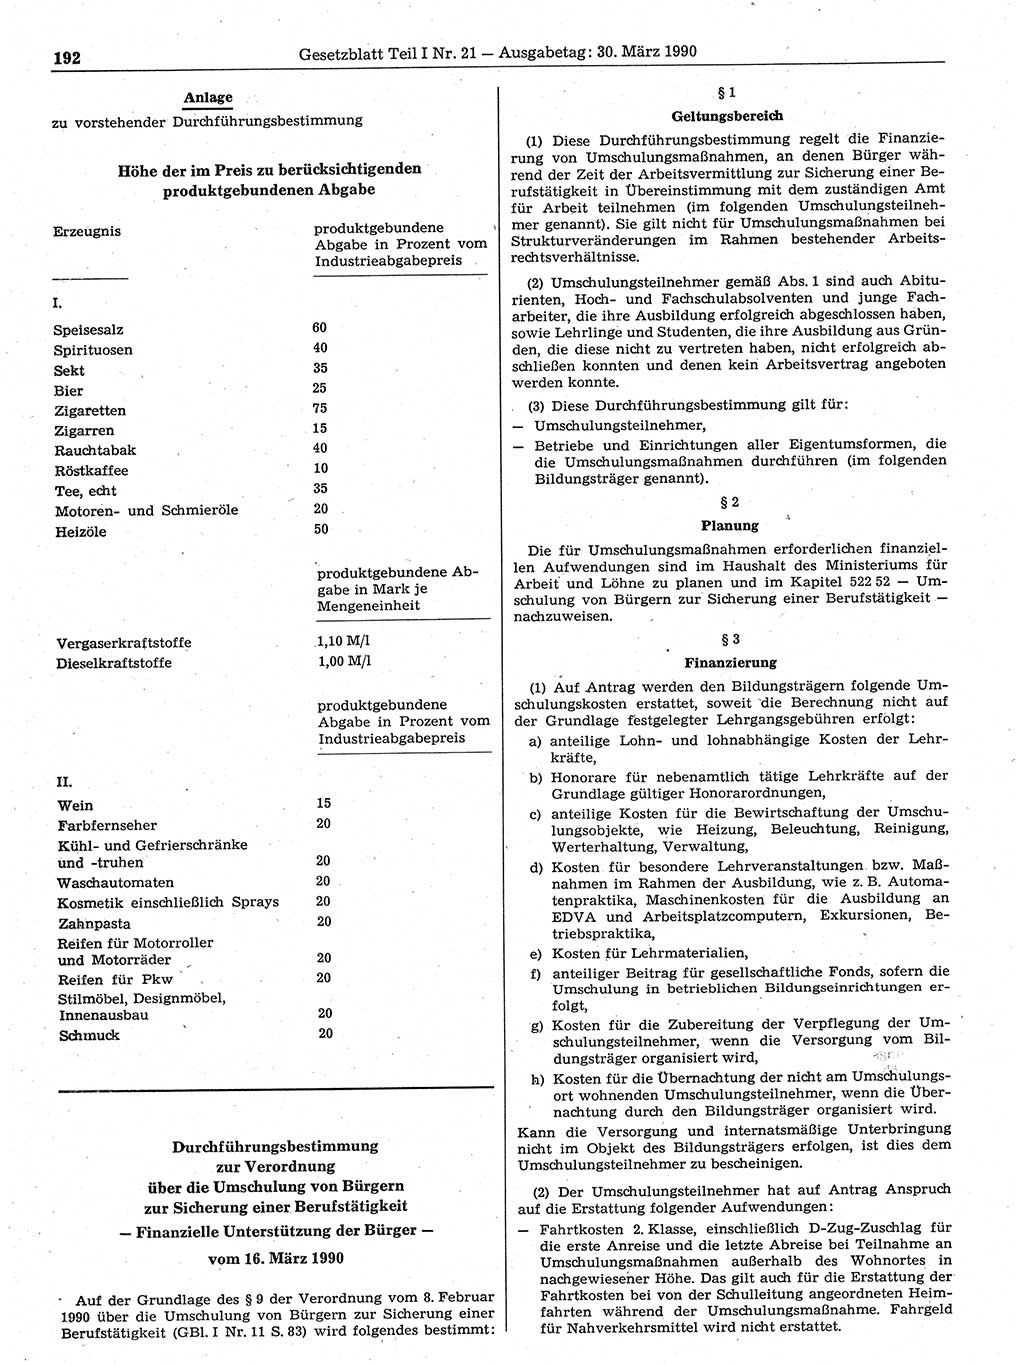 Gesetzblatt (GBl.) der Deutschen Demokratischen Republik (DDR) Teil Ⅰ 1990, Seite 192 (GBl. DDR Ⅰ 1990, S. 192)